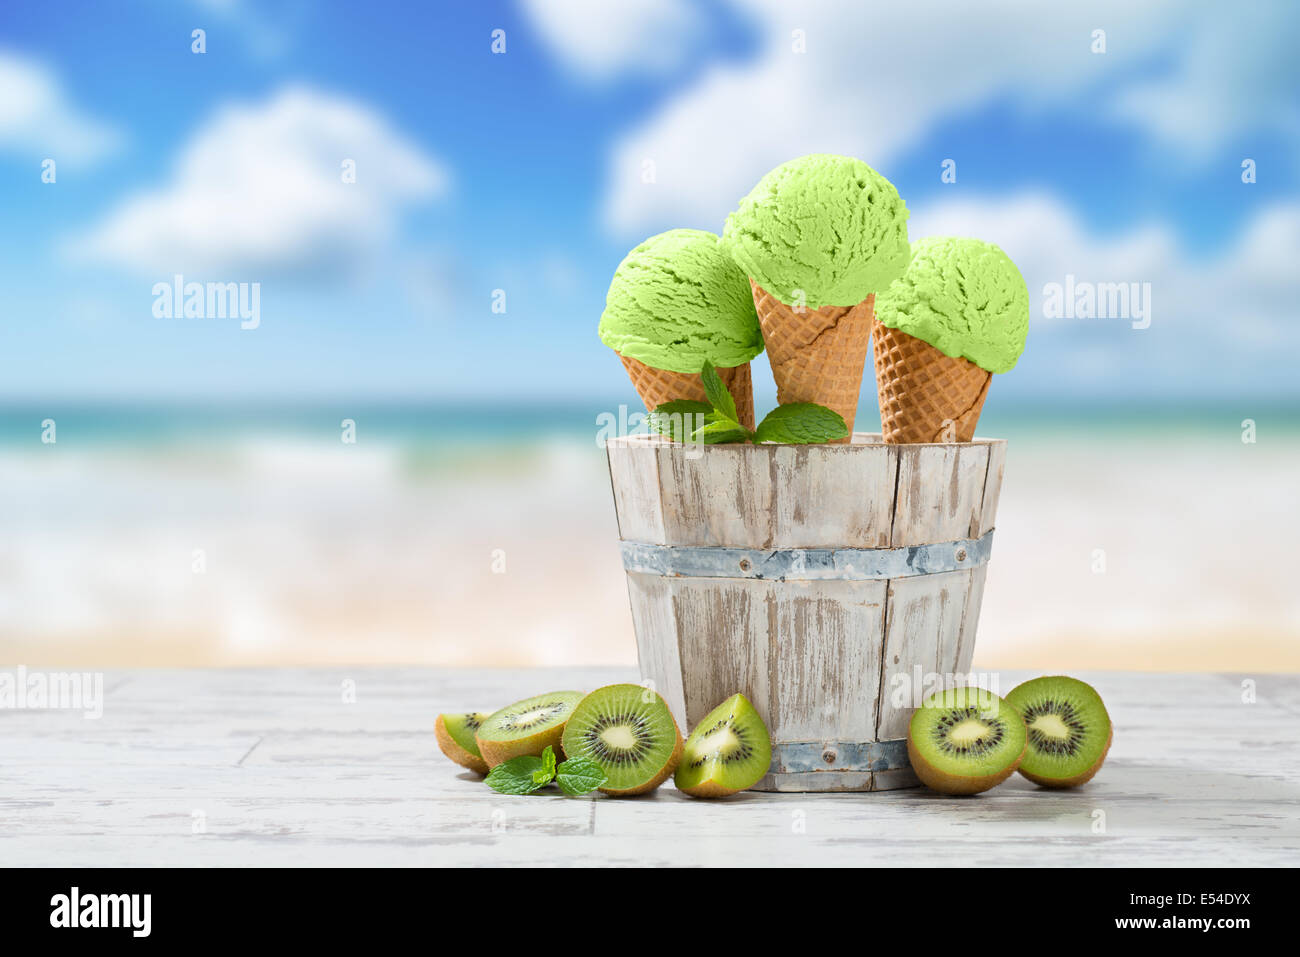 Helado sabor Kiwi decking con frutas - playa de fondo desenfocado Foto de stock